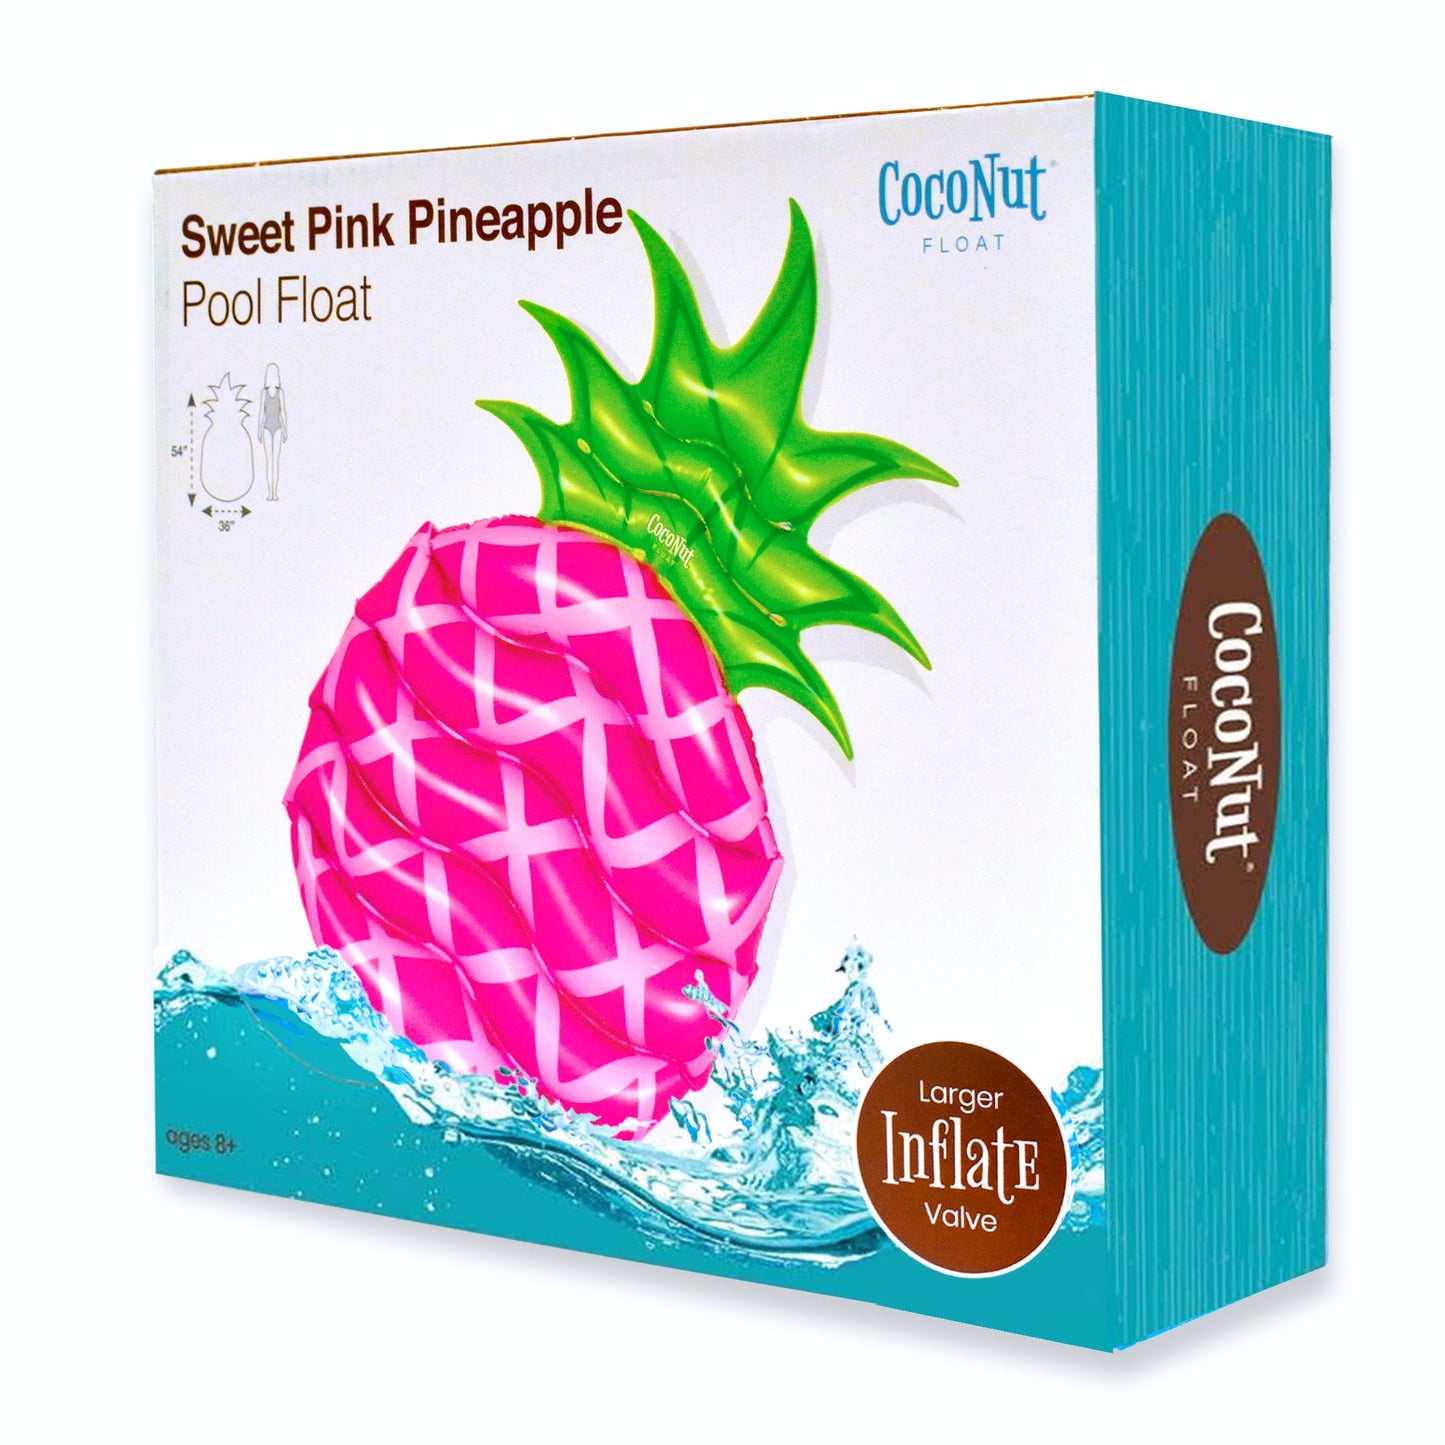 Sweet Pink Pineapple Pool Float